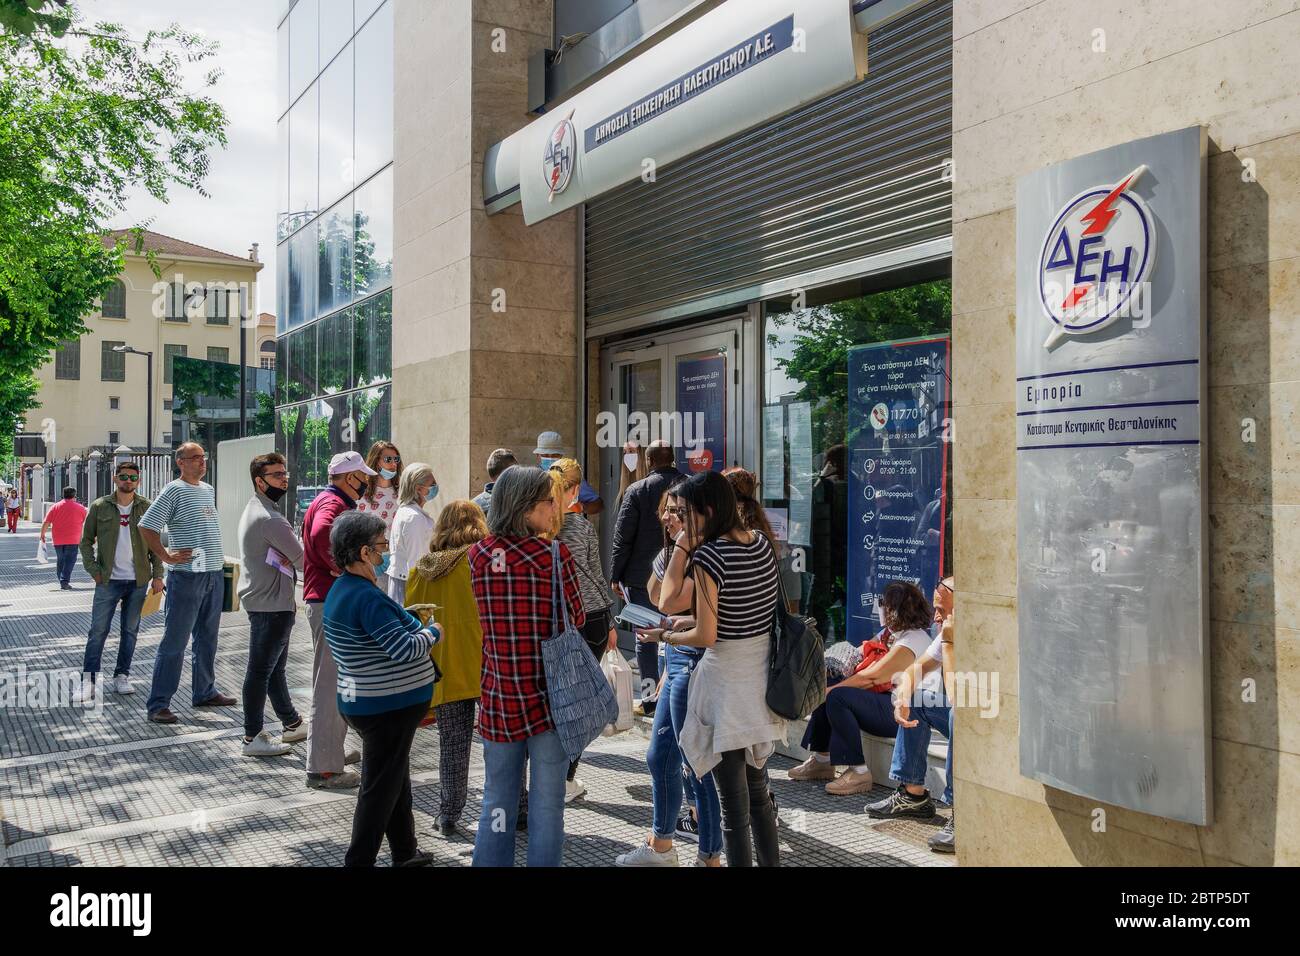 Salonicco, Grecia - maggio 25 2020: Le misure del coronavirus influiscono sulla vita quotidiana. I greci mantengono la distanza al di fuori DELLA DEI-Public Power Corporation per il deposito di elettricità, in linea con la decisione di impedire COVID-19. Foto Stock